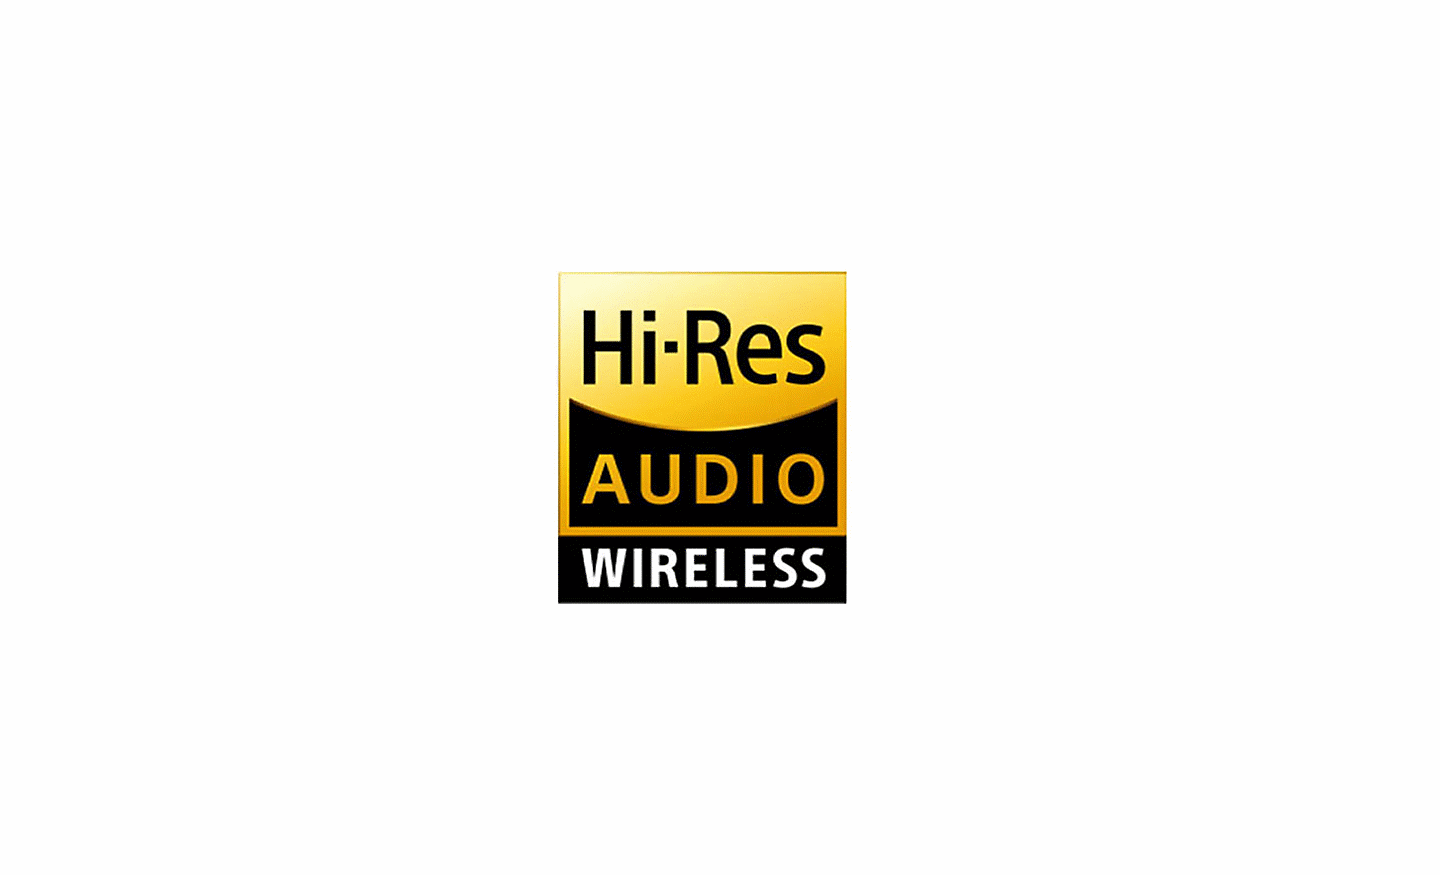 Εικόνα λογοτύπου Hi-Res Audio Wireless